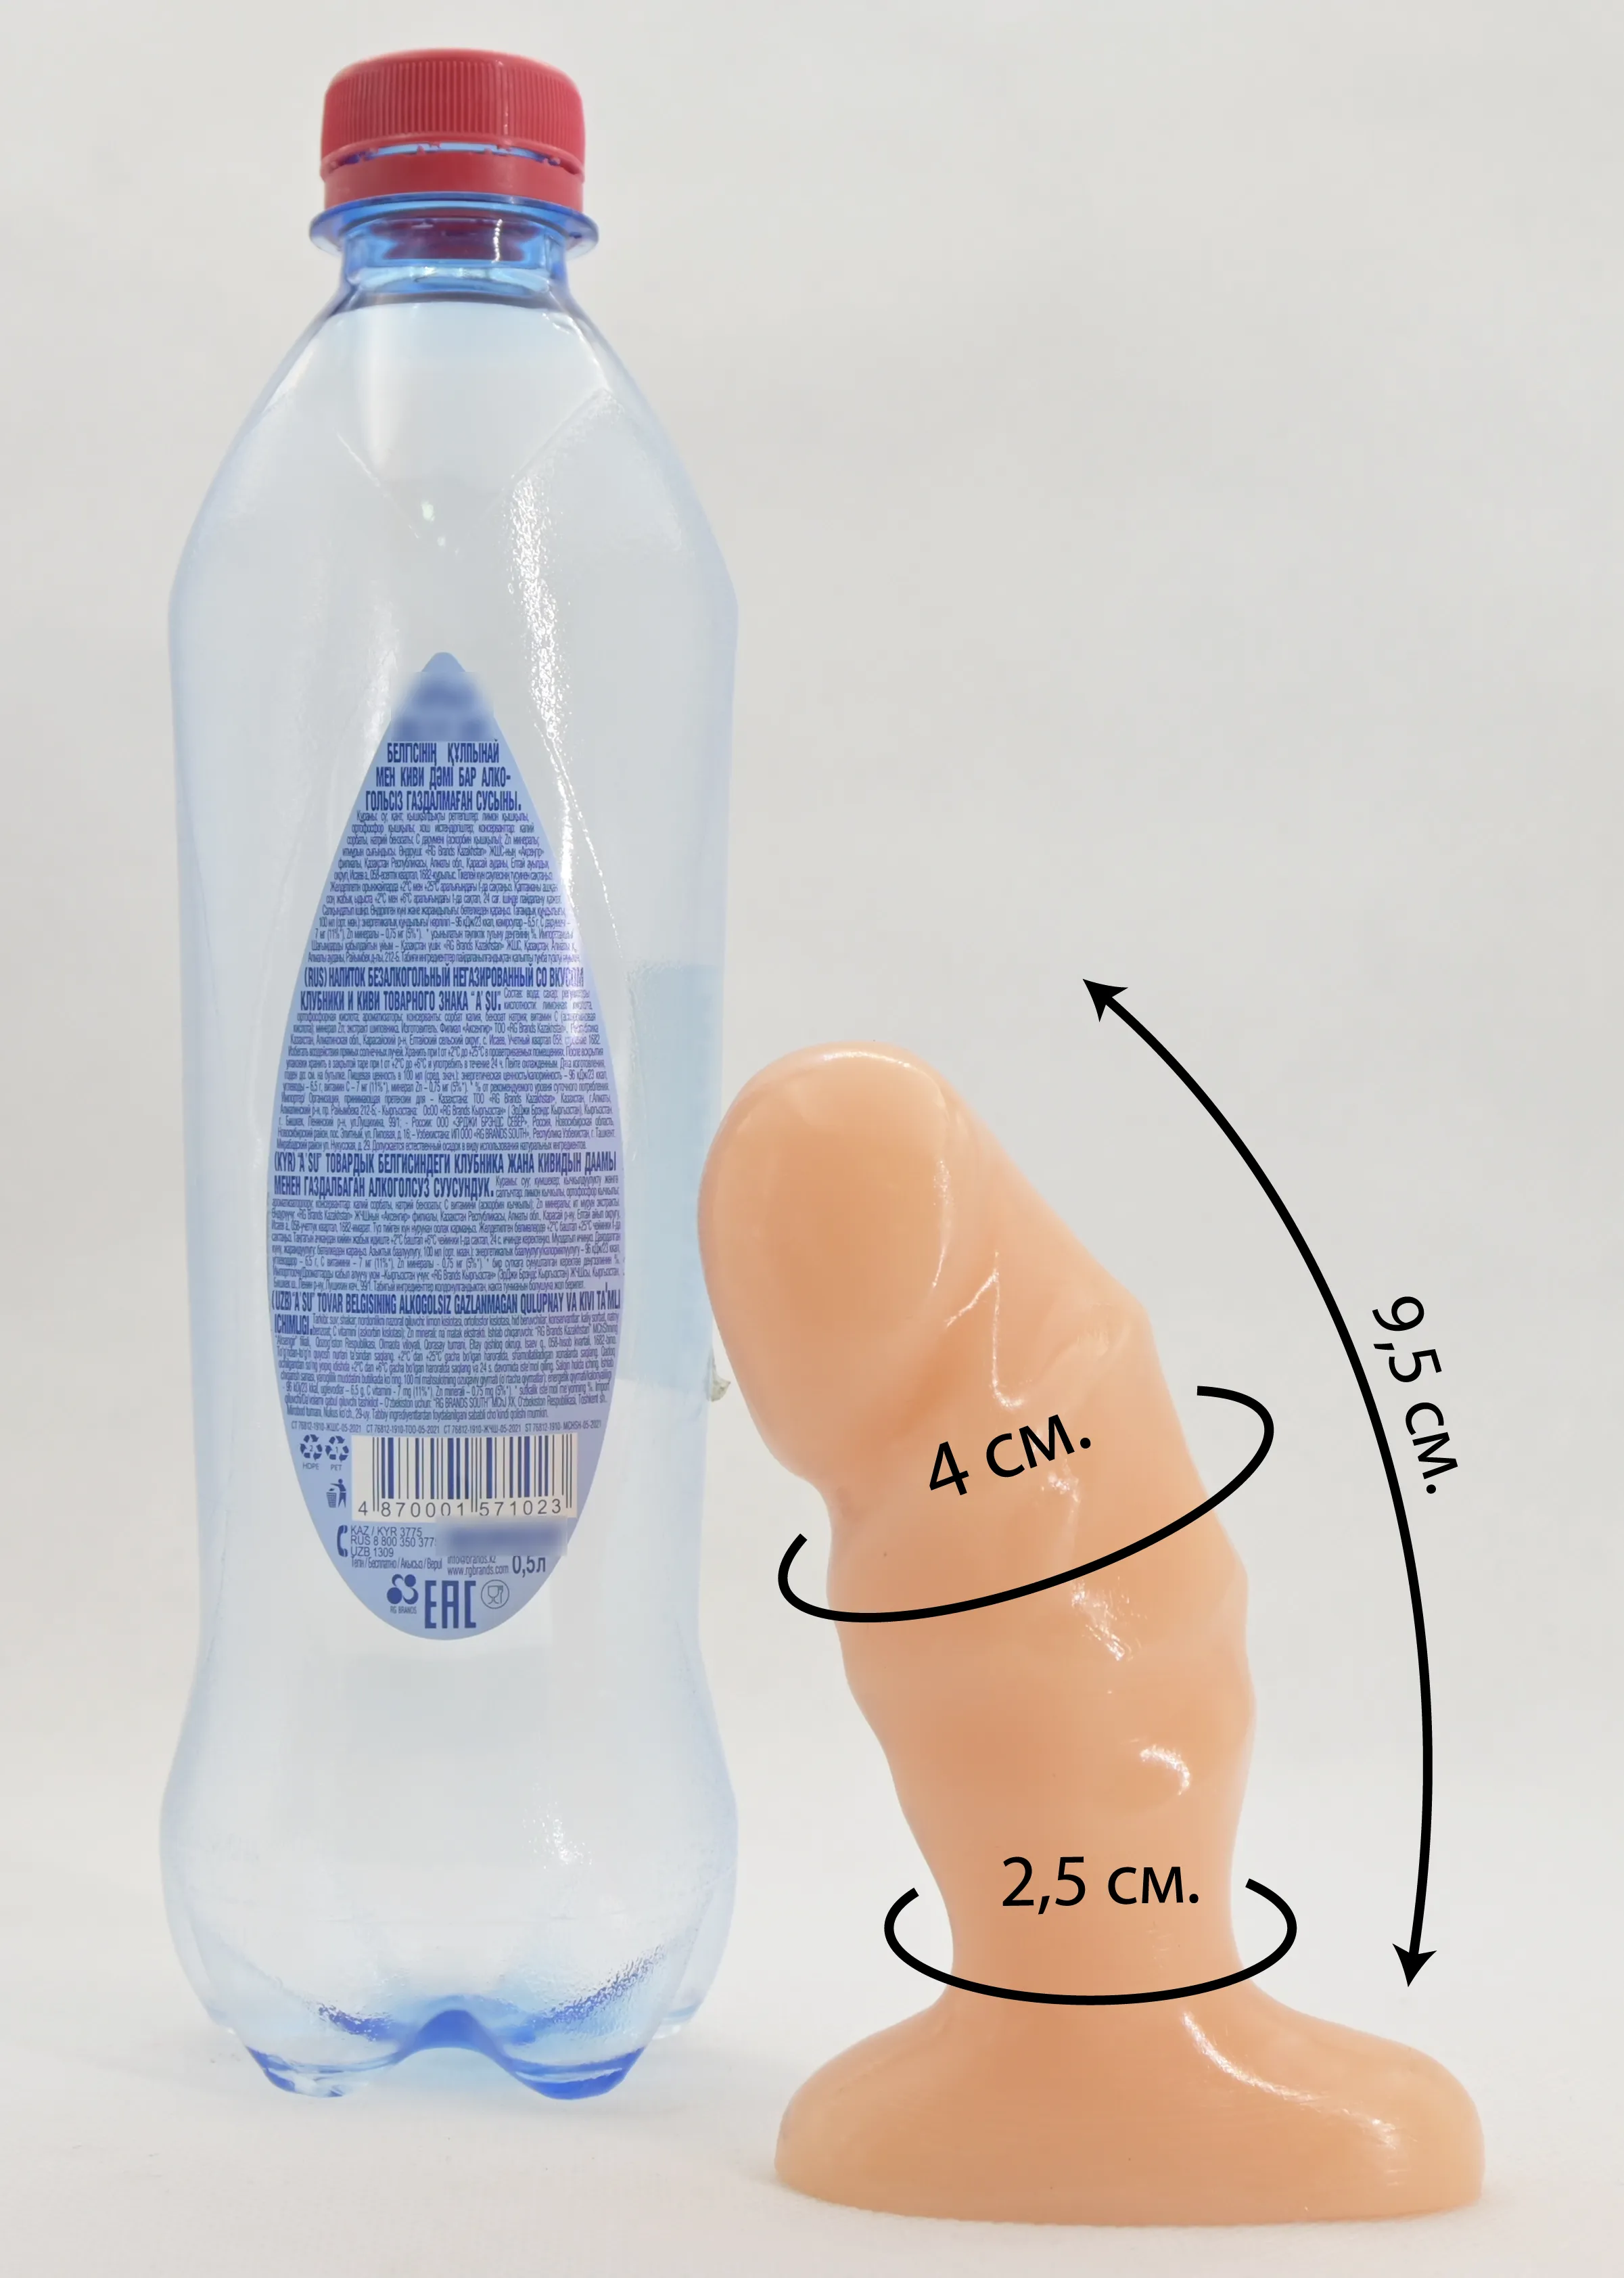 Размеры анальной втулки Tush в сравнении с бутылкой воды